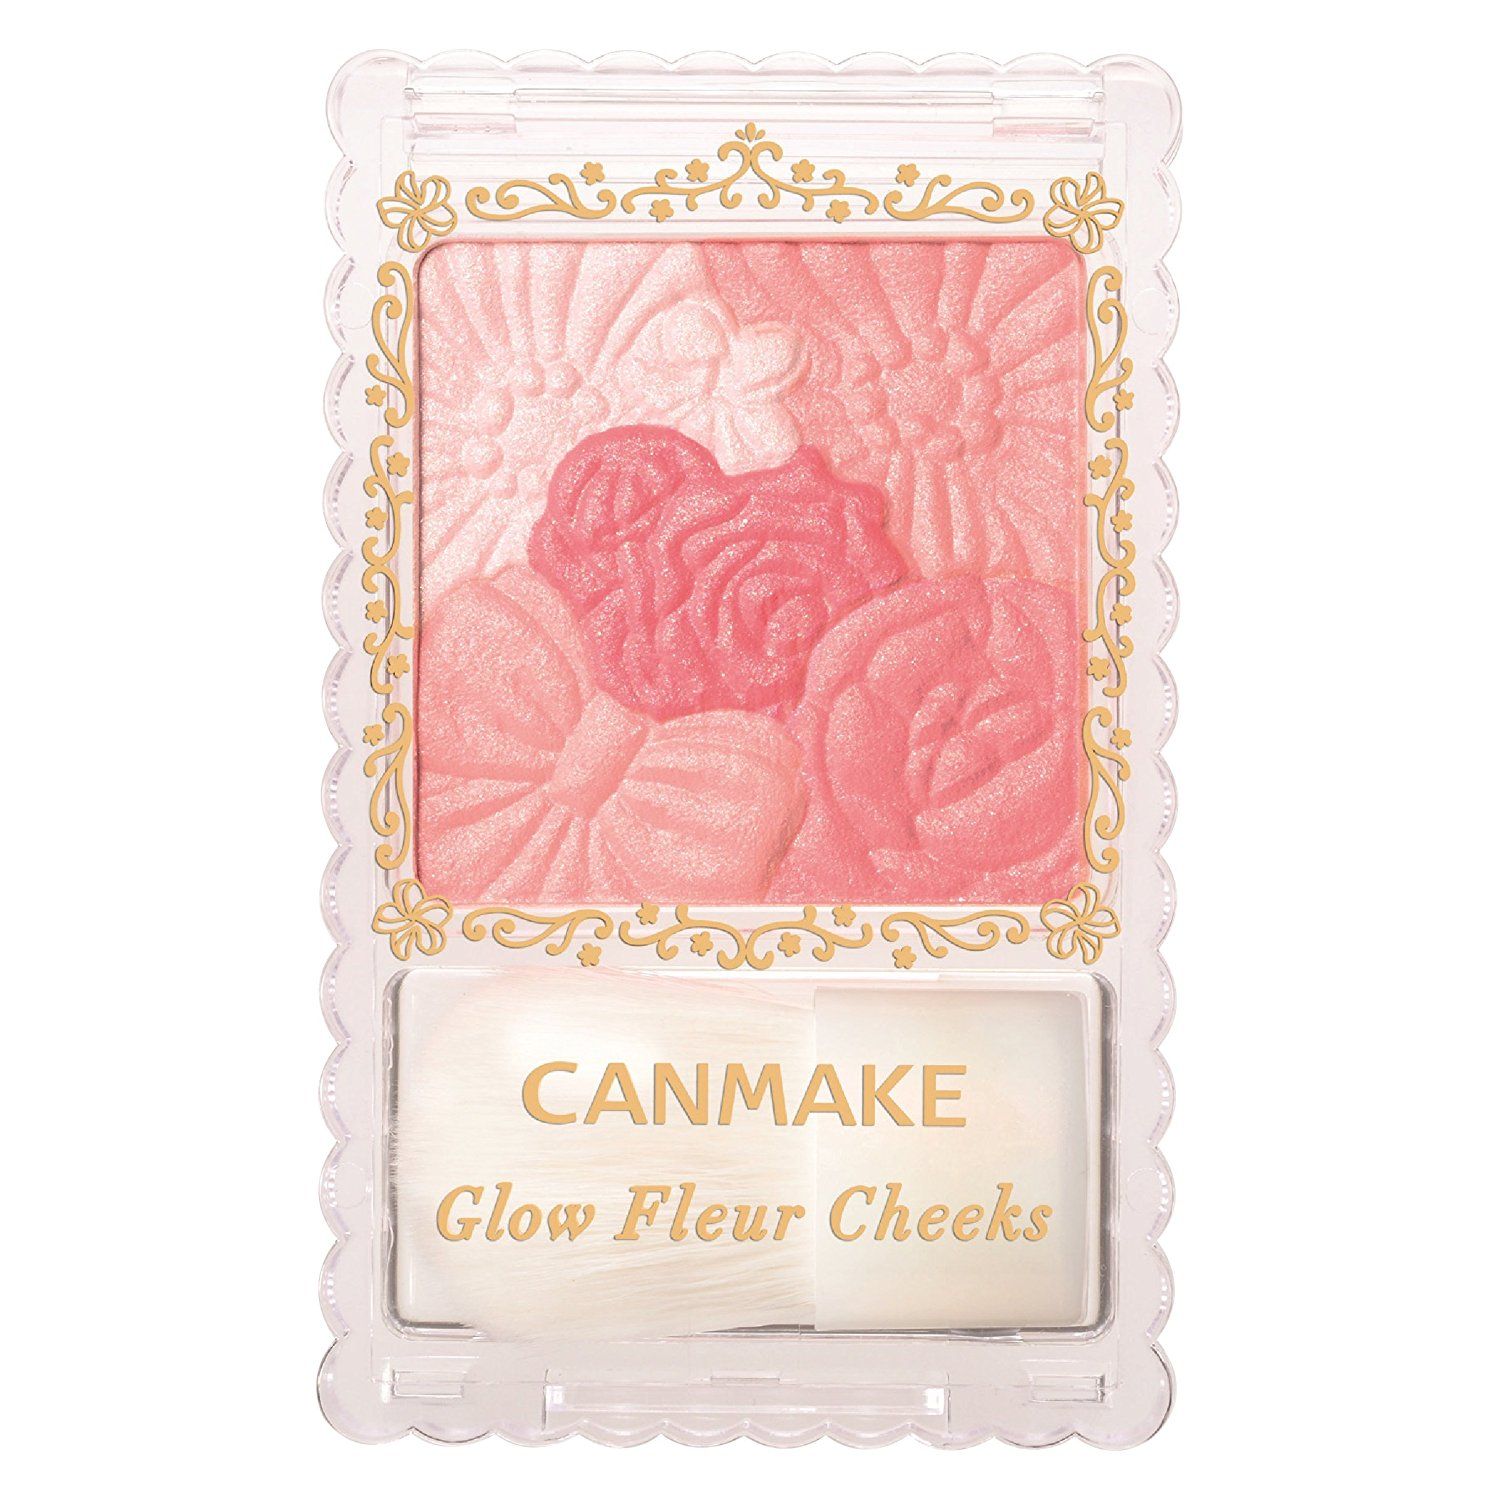 Ma Hong Canmake Glow Fleur Cheeks d985a8f9aa